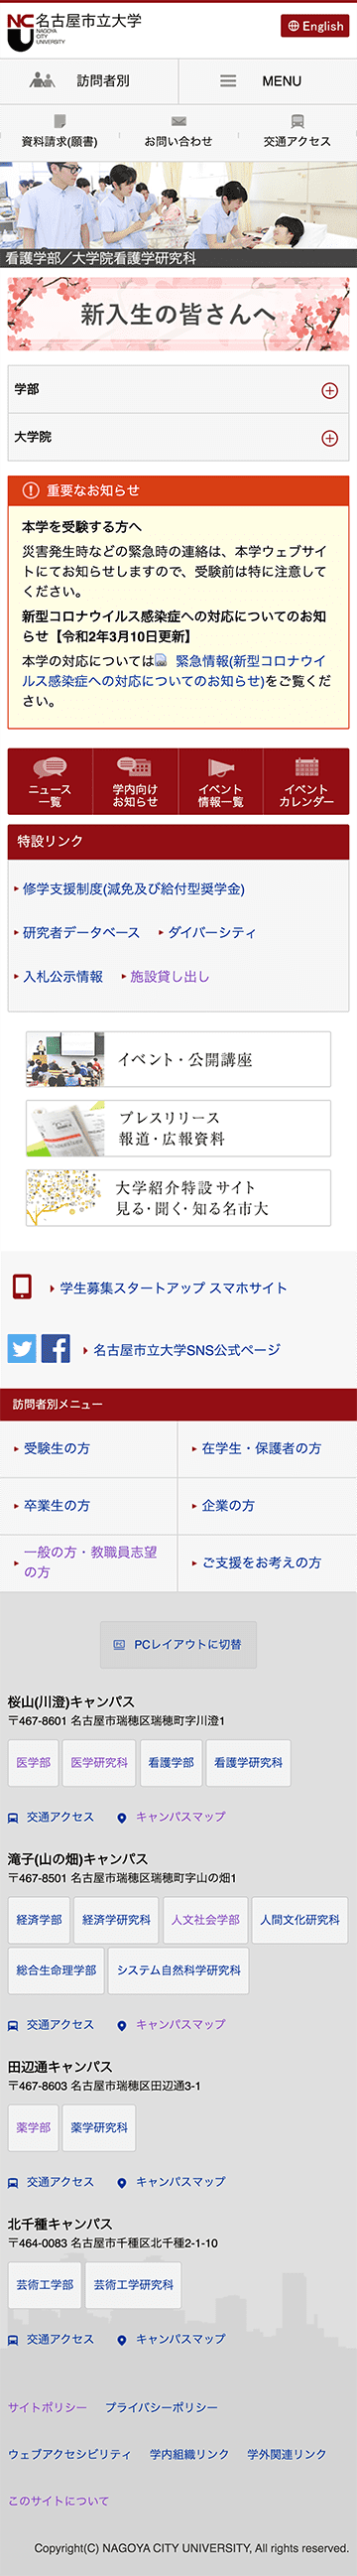 名古屋市立大学のホームページ　スマホ版のキャプチャ